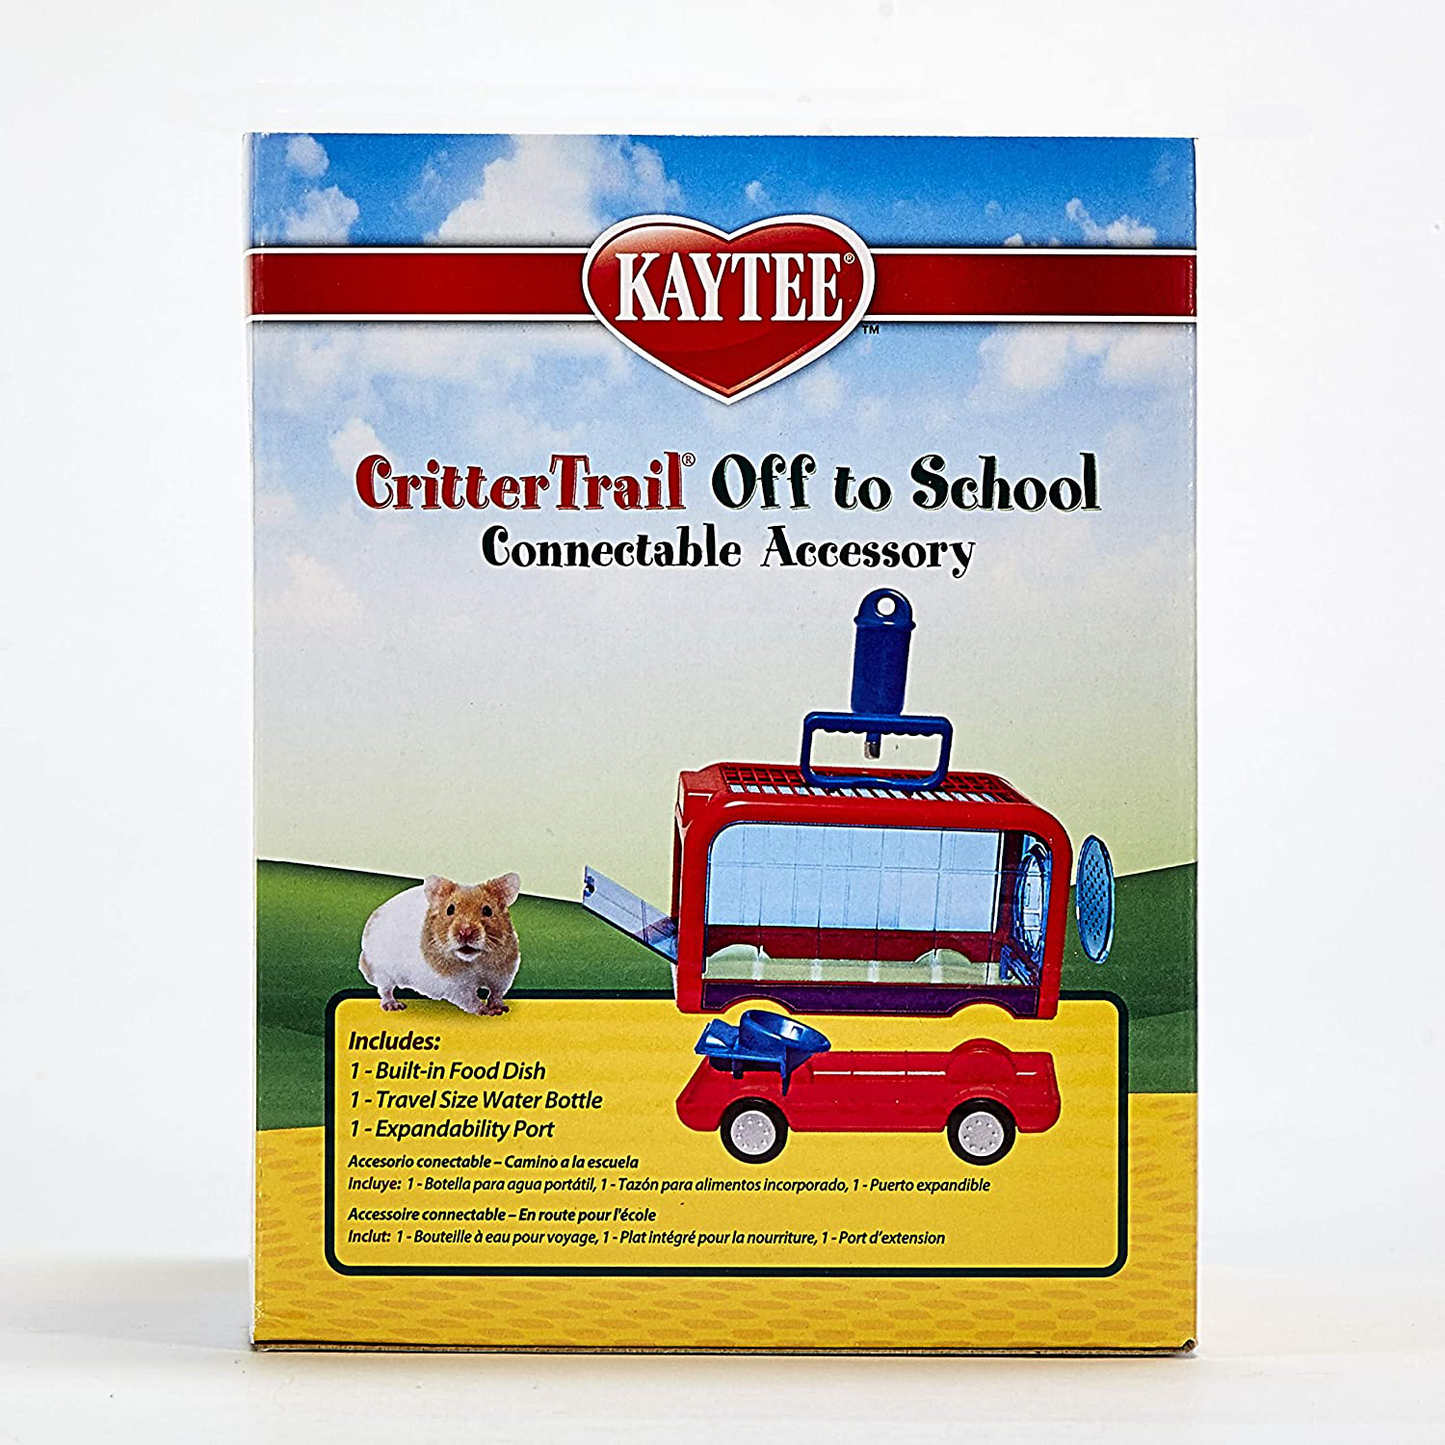 Kaytee Crittertrail off to School